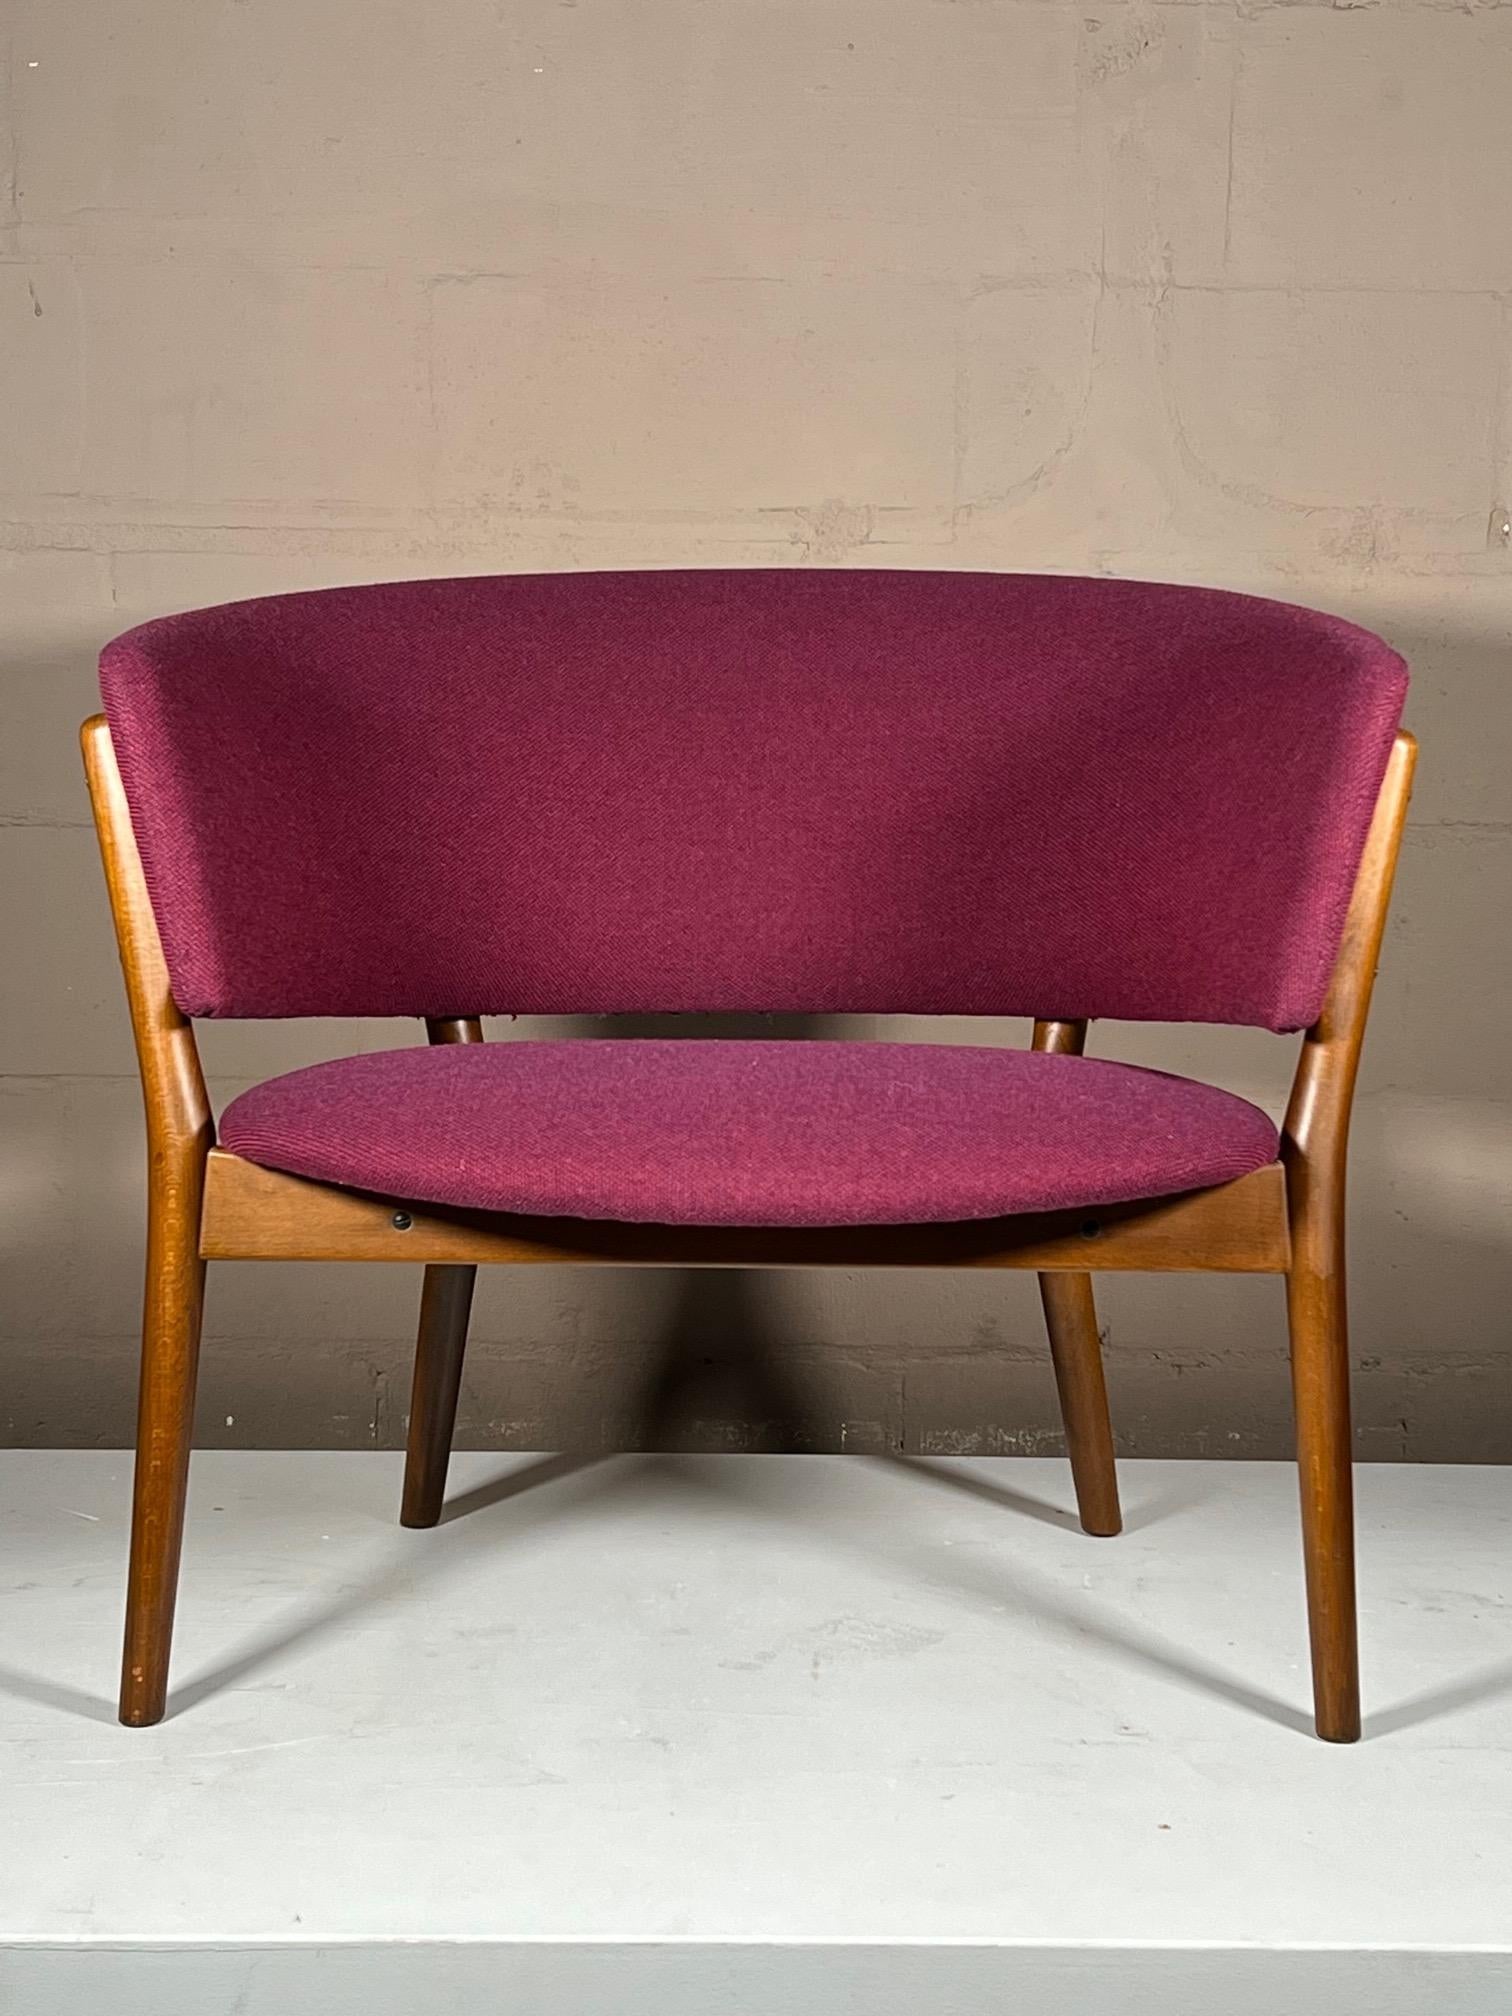 Une chaise tonneau classique connue sous le nom de ND83, conçue par Nanna Ditzel, fabriquée par Søren Willadsen, au Danemark, et distribuée par Selig aux États-Unis. Bois de hêtre avec revêtement d'origine.